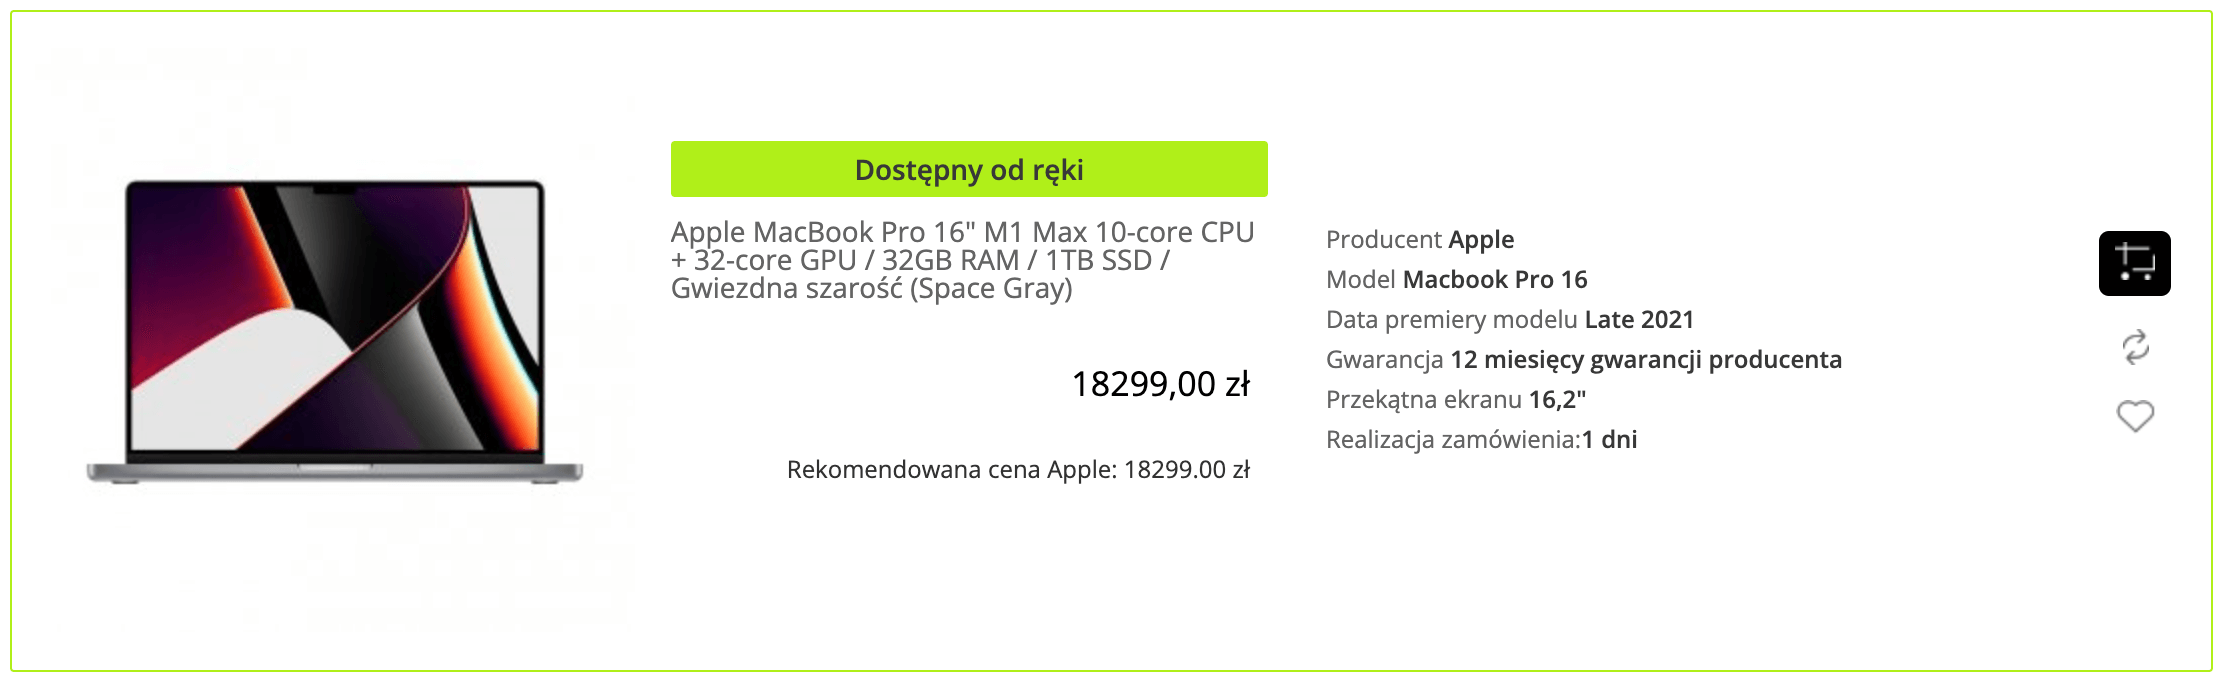 Apple MacBook Pro 16 cala M1 Max 10-core CPU + 32-core GPU / 32GB RAM / 1TB SSD / Gwiezdna szarość (Space Gray) - MK183ZE/A/P2/R1/D1